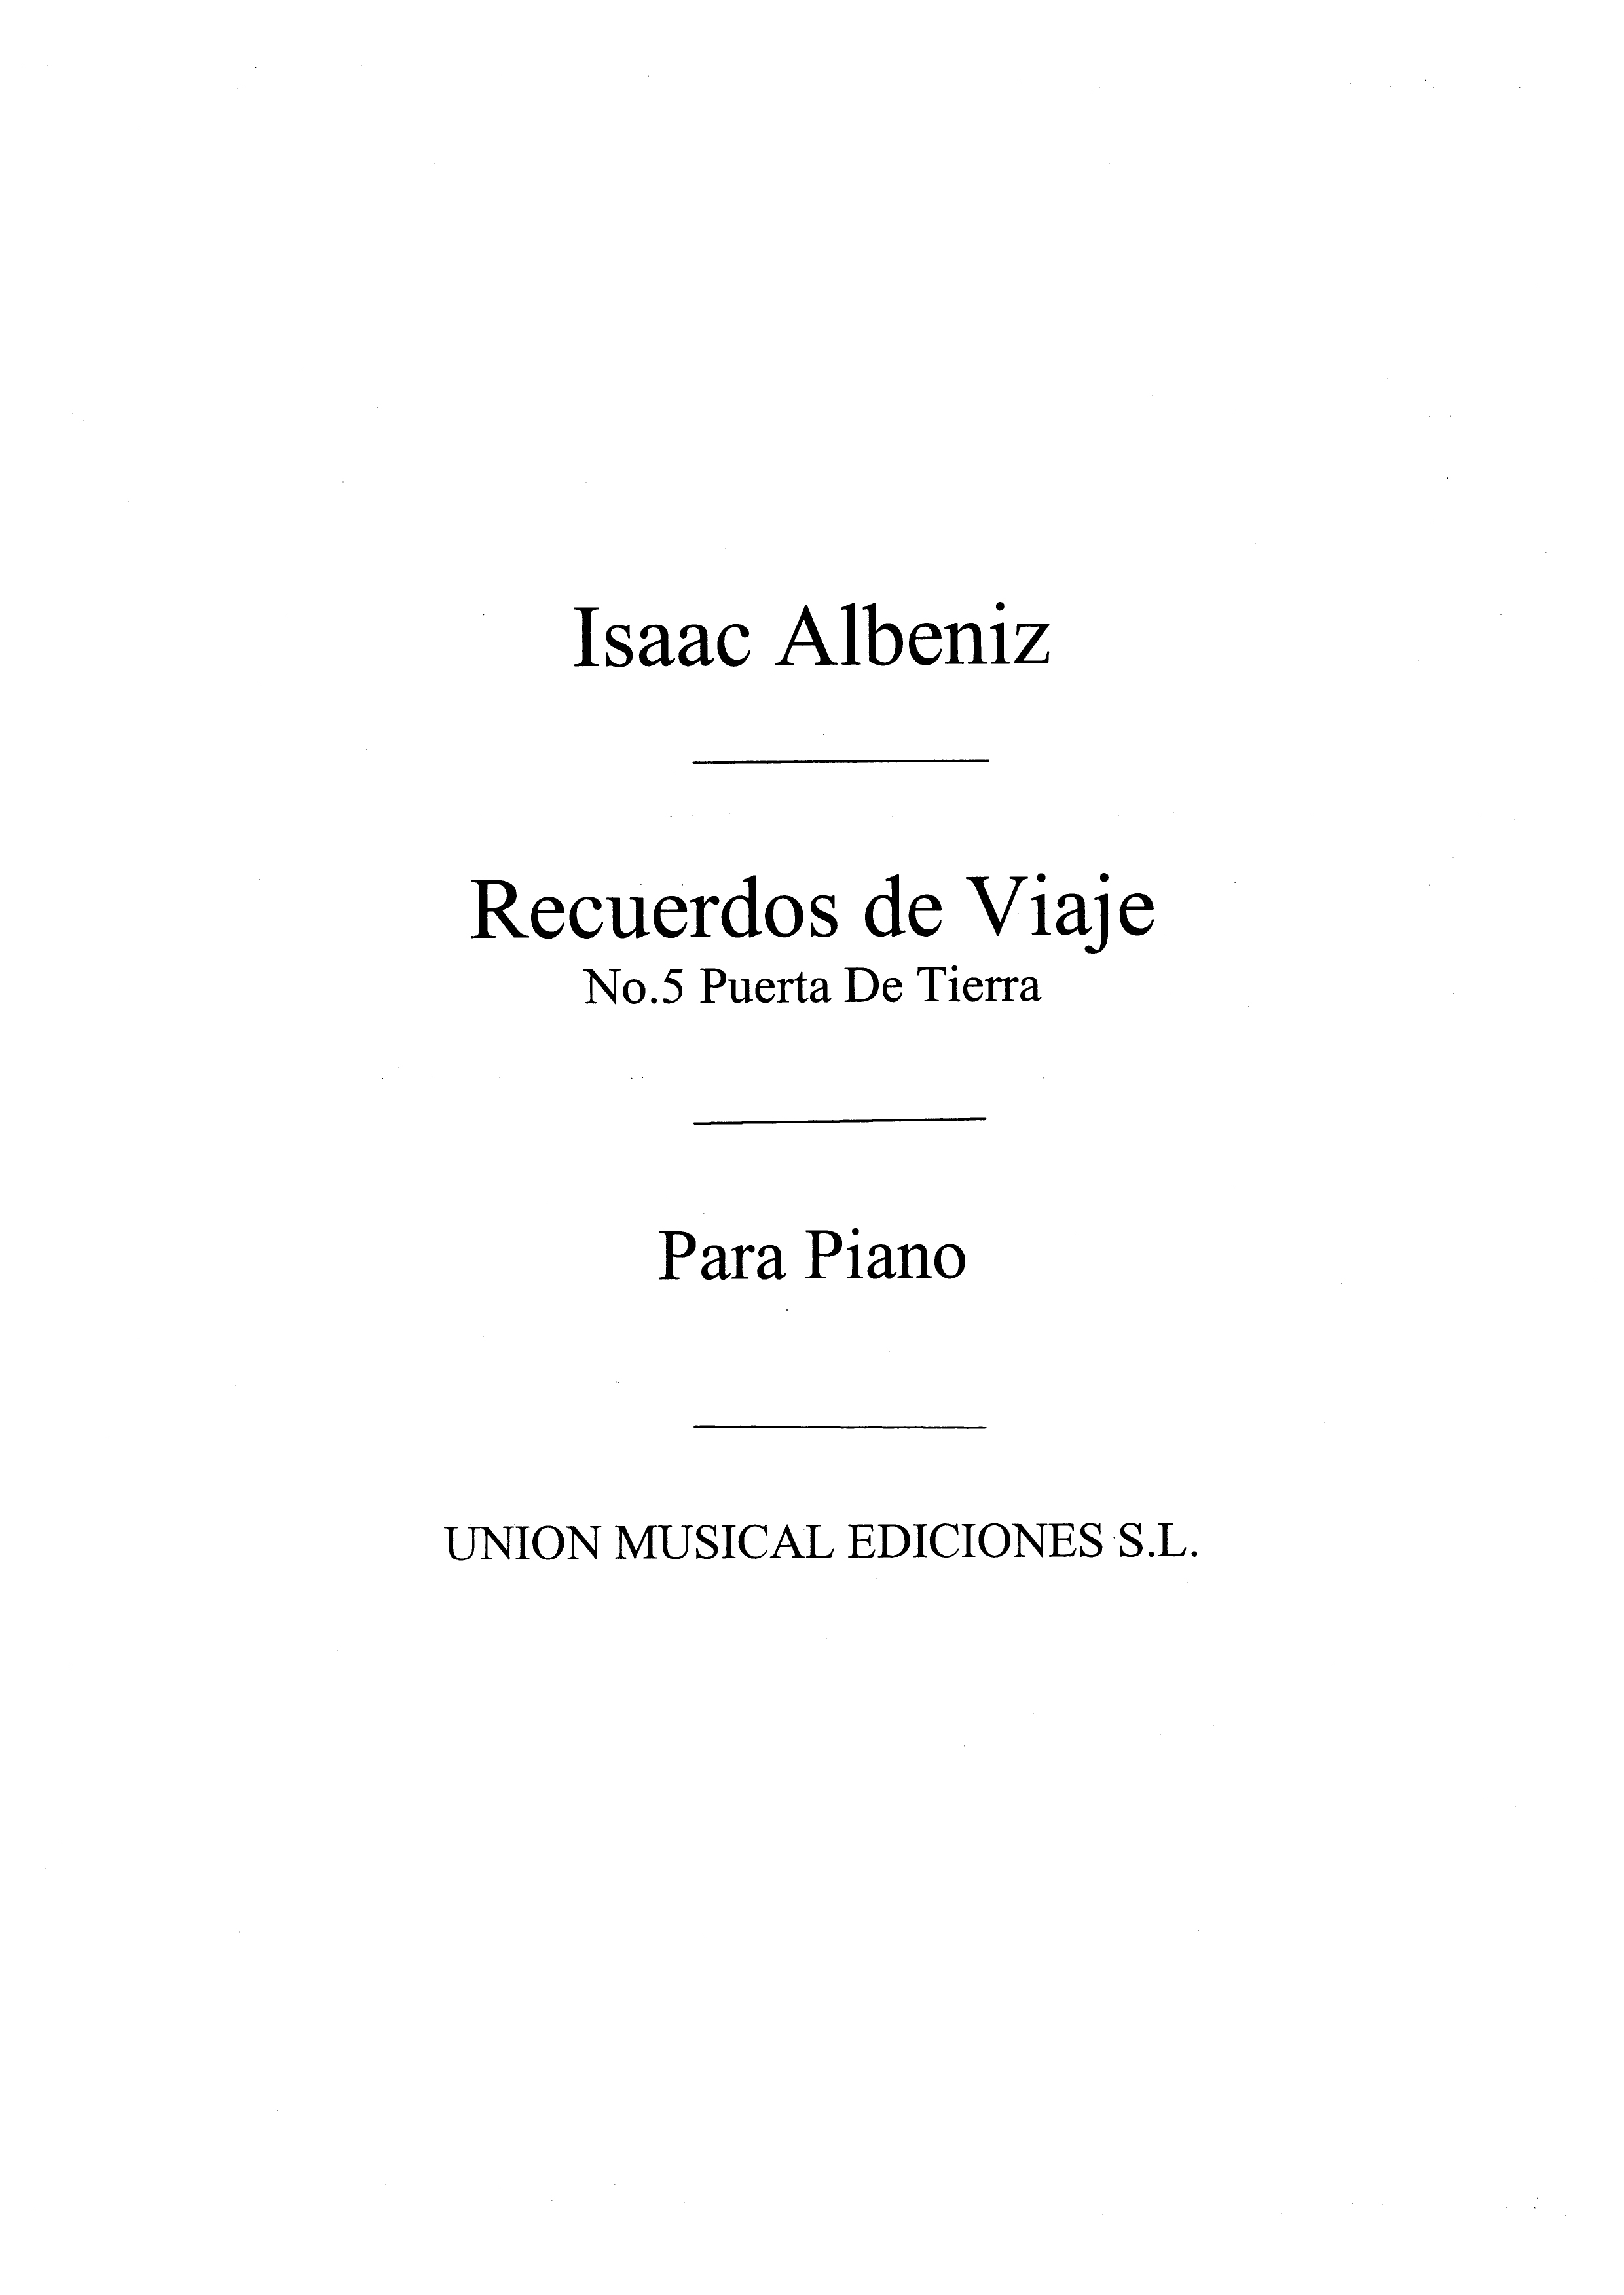 Isaac Alb�niz: Puerta De Tierra Bolero No.5 Rcrds De Vje Op.71 Pf: Piano: